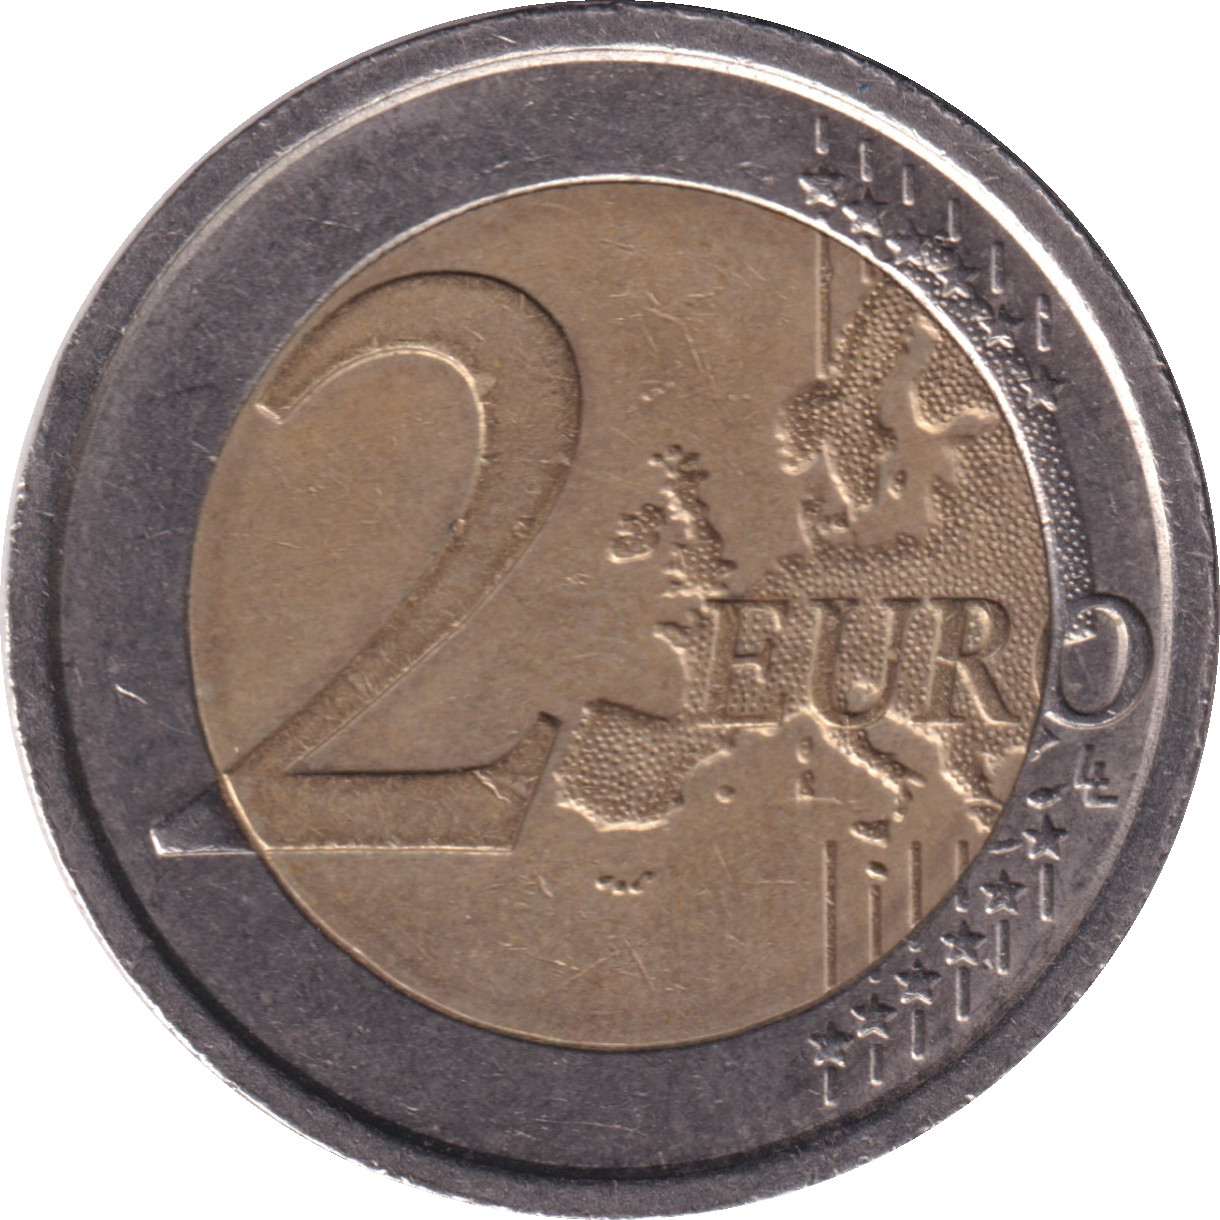 2 euro - Dante Alighieri